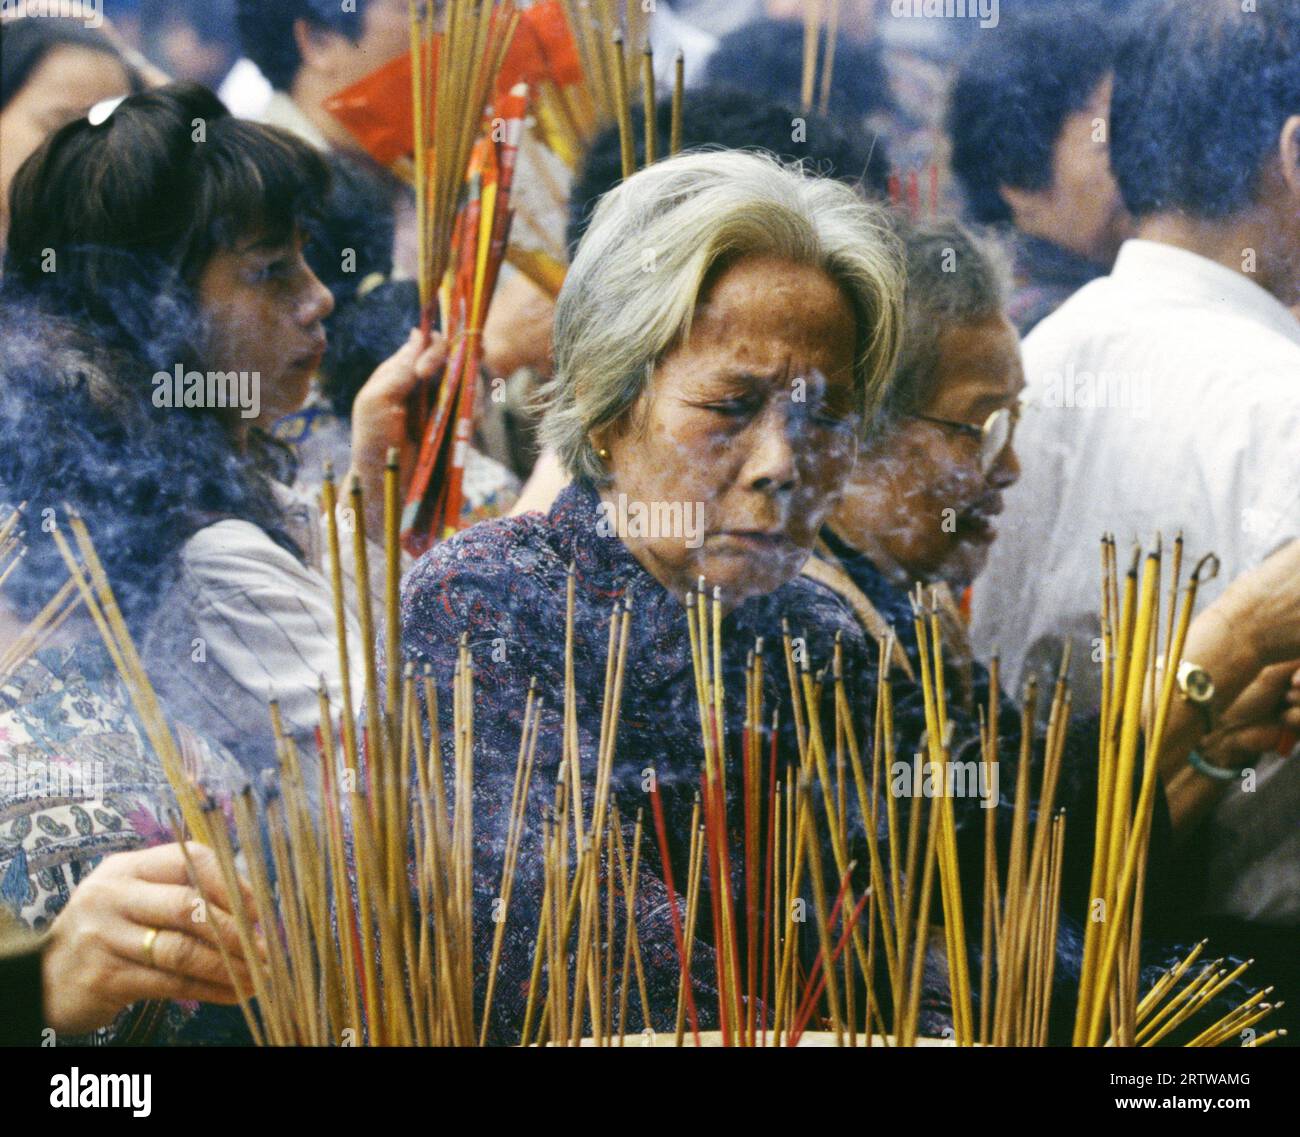 rituals in Won tai Sin temple Stock Photo